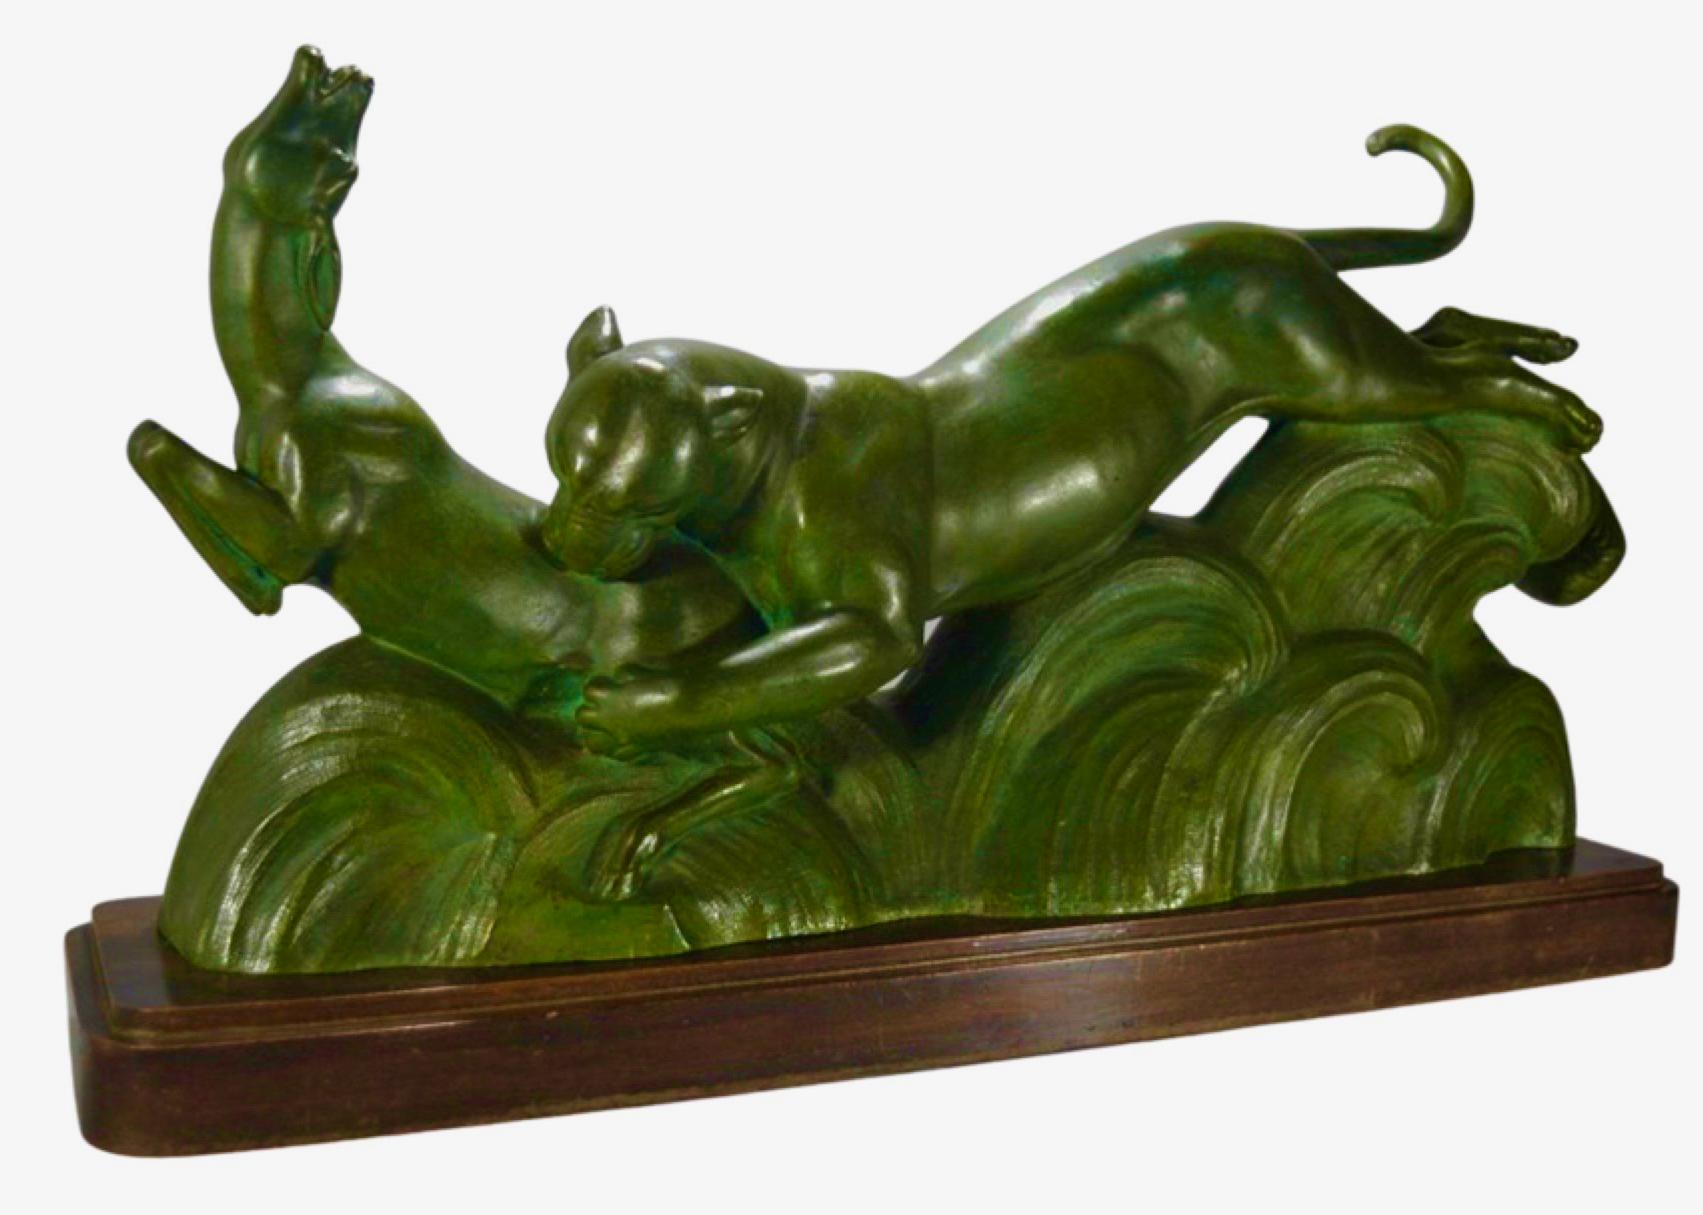 Sculpture française Art déco en bronze représentant une panthère et une gazelle par Alexander Ouline. Elle représente des animaux en action, une sorte de sol forestier abstrait en bronze, le tout monté sur une base en bois. Ouline était un artiste